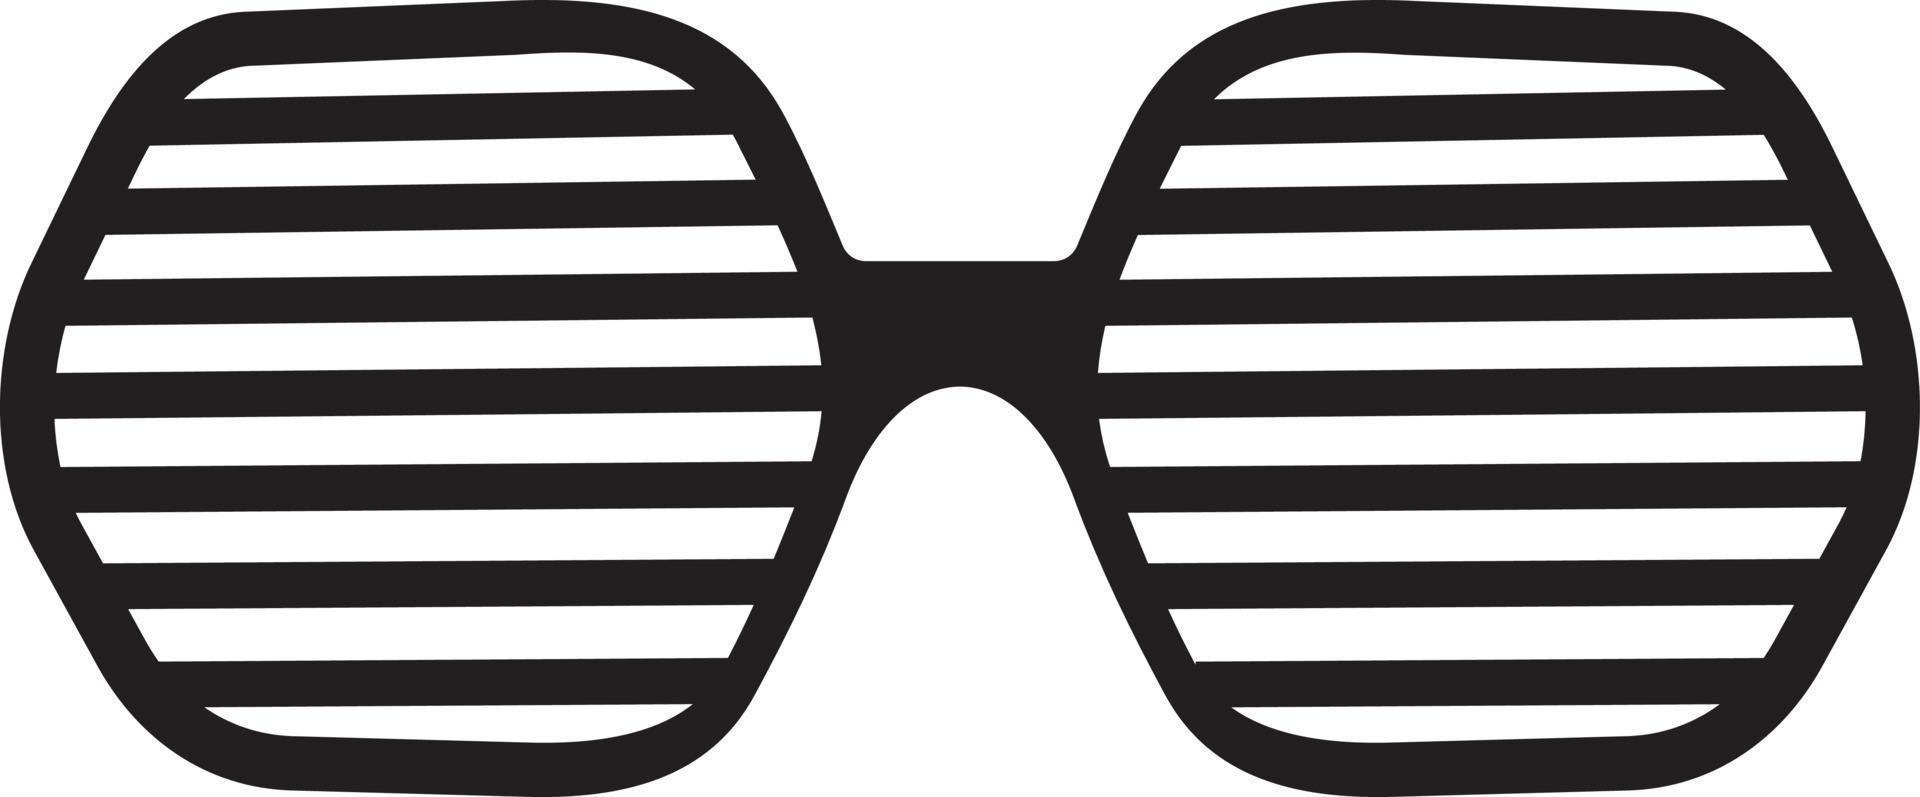 Sunglasses vector icon